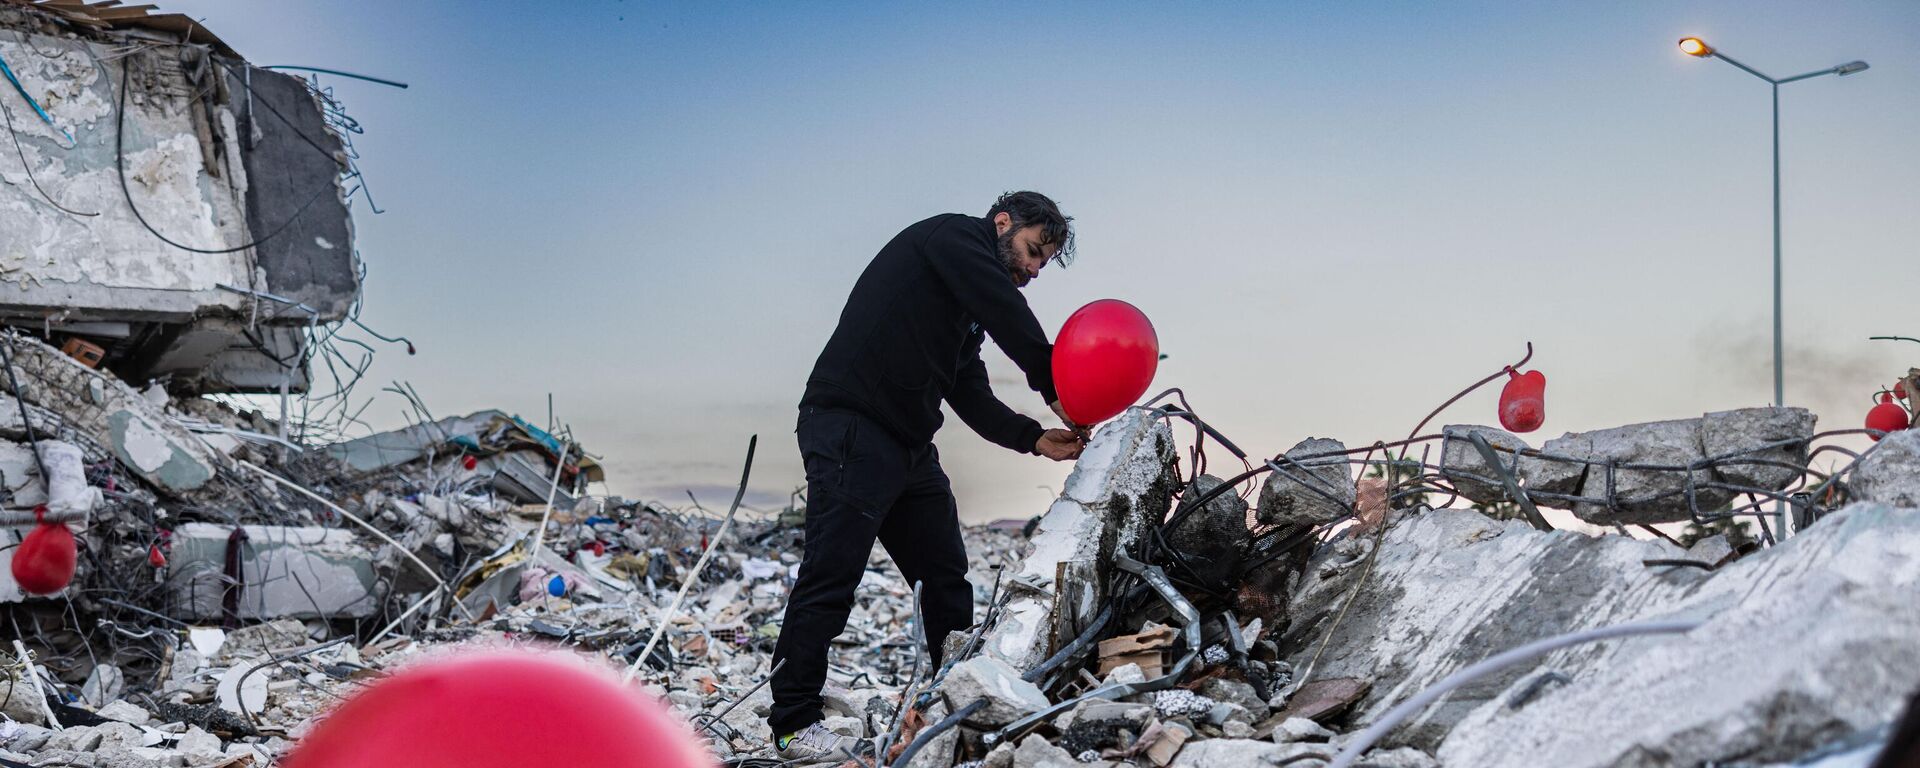 Ogun Sever Our, 38 tuổi, treo quả bóng bay trên đống đổ nát tòa nhà bị sập ở Antakya, miền nam Thổ Nhĩ Kỳ. - Sputnik Việt Nam, 1920, 23.02.2023